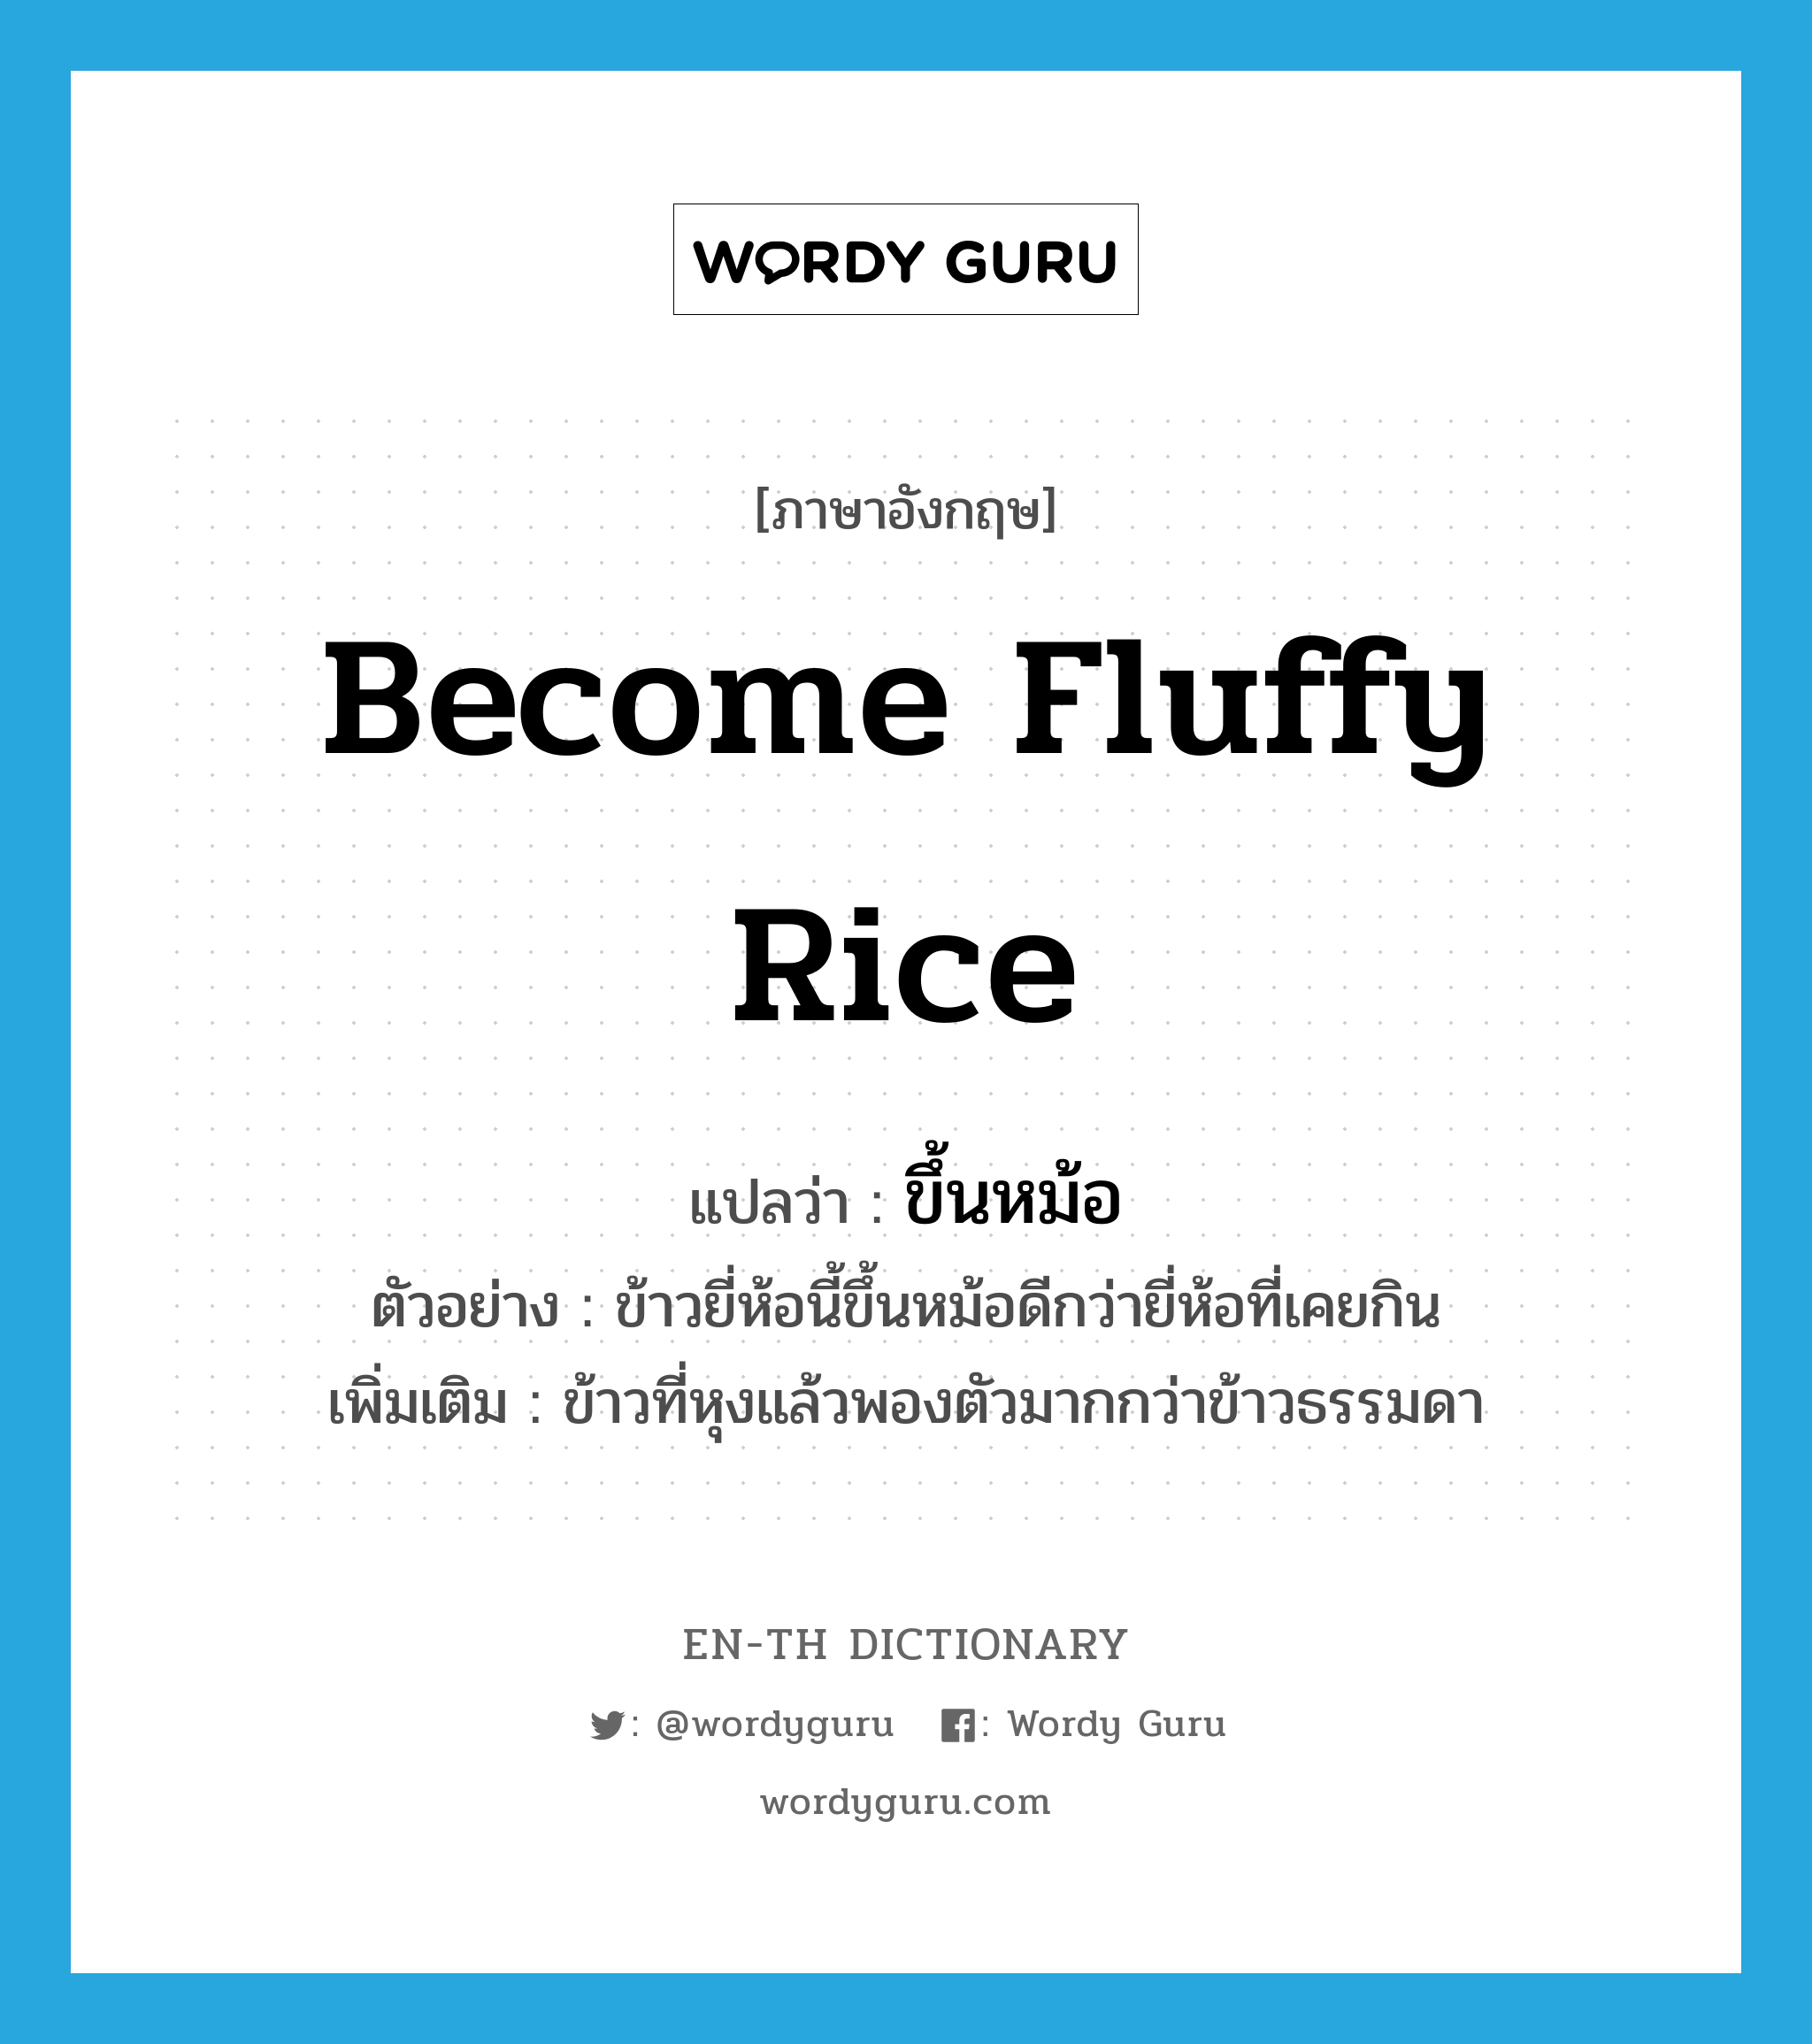 ขึ้นหม้อ ภาษาอังกฤษ?, คำศัพท์ภาษาอังกฤษ ขึ้นหม้อ แปลว่า become fluffy rice ประเภท V ตัวอย่าง ข้าวยี่ห้อนี้ขึ้นหม้อดีกว่ายี่ห้อที่เคยกิน เพิ่มเติม ข้าวที่หุงแล้วพองตัวมากกว่าข้าวธรรมดา หมวด V